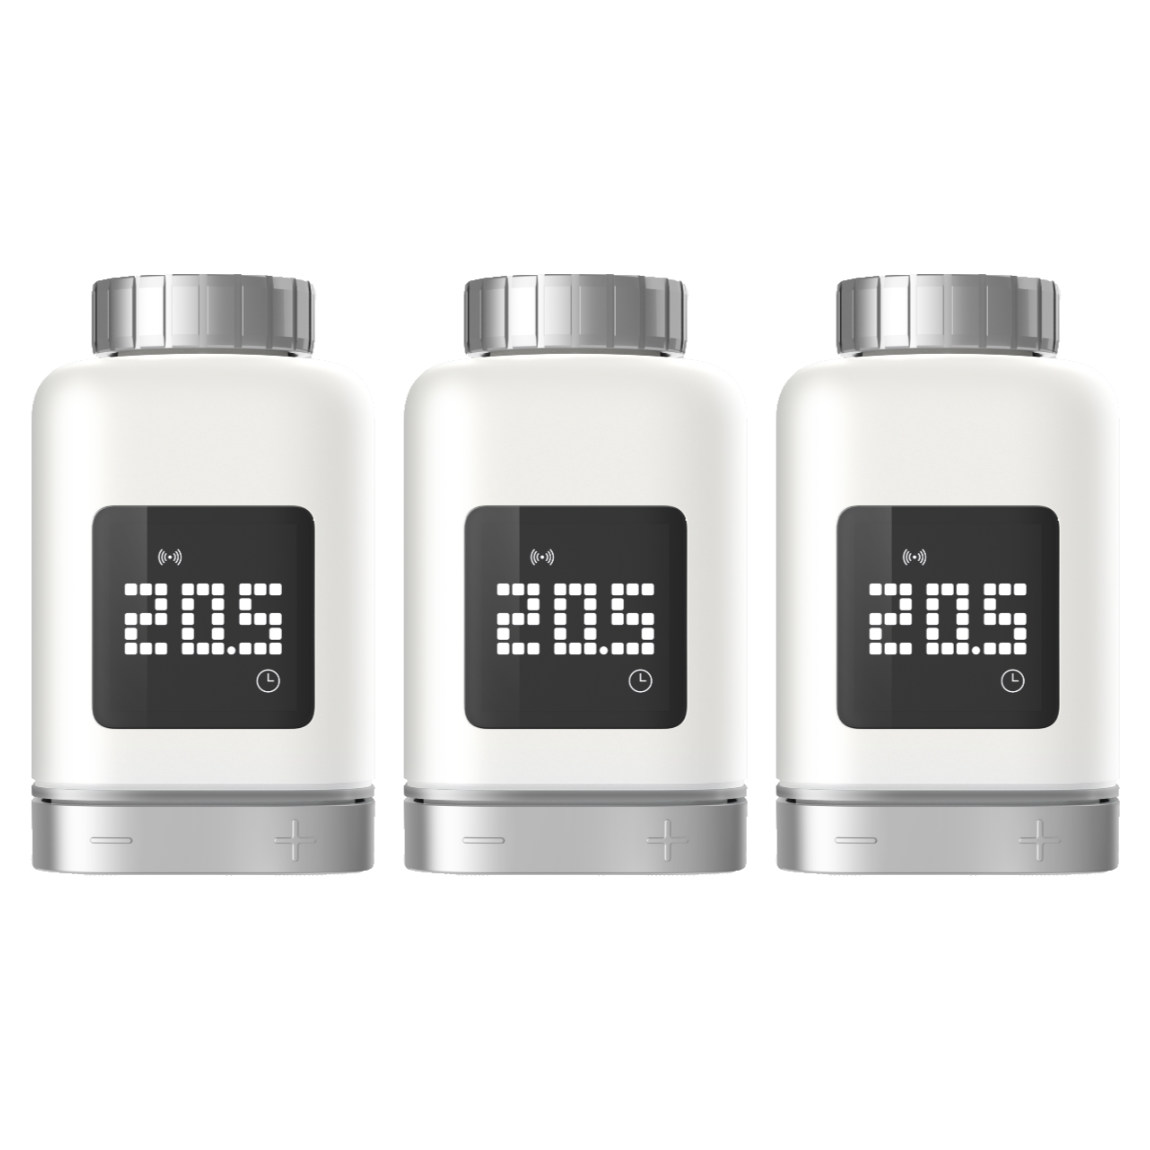 Bosch Smart Home Heizkörper-Thermostat II 3er-Set – Deal, Schnäppchen, sparen